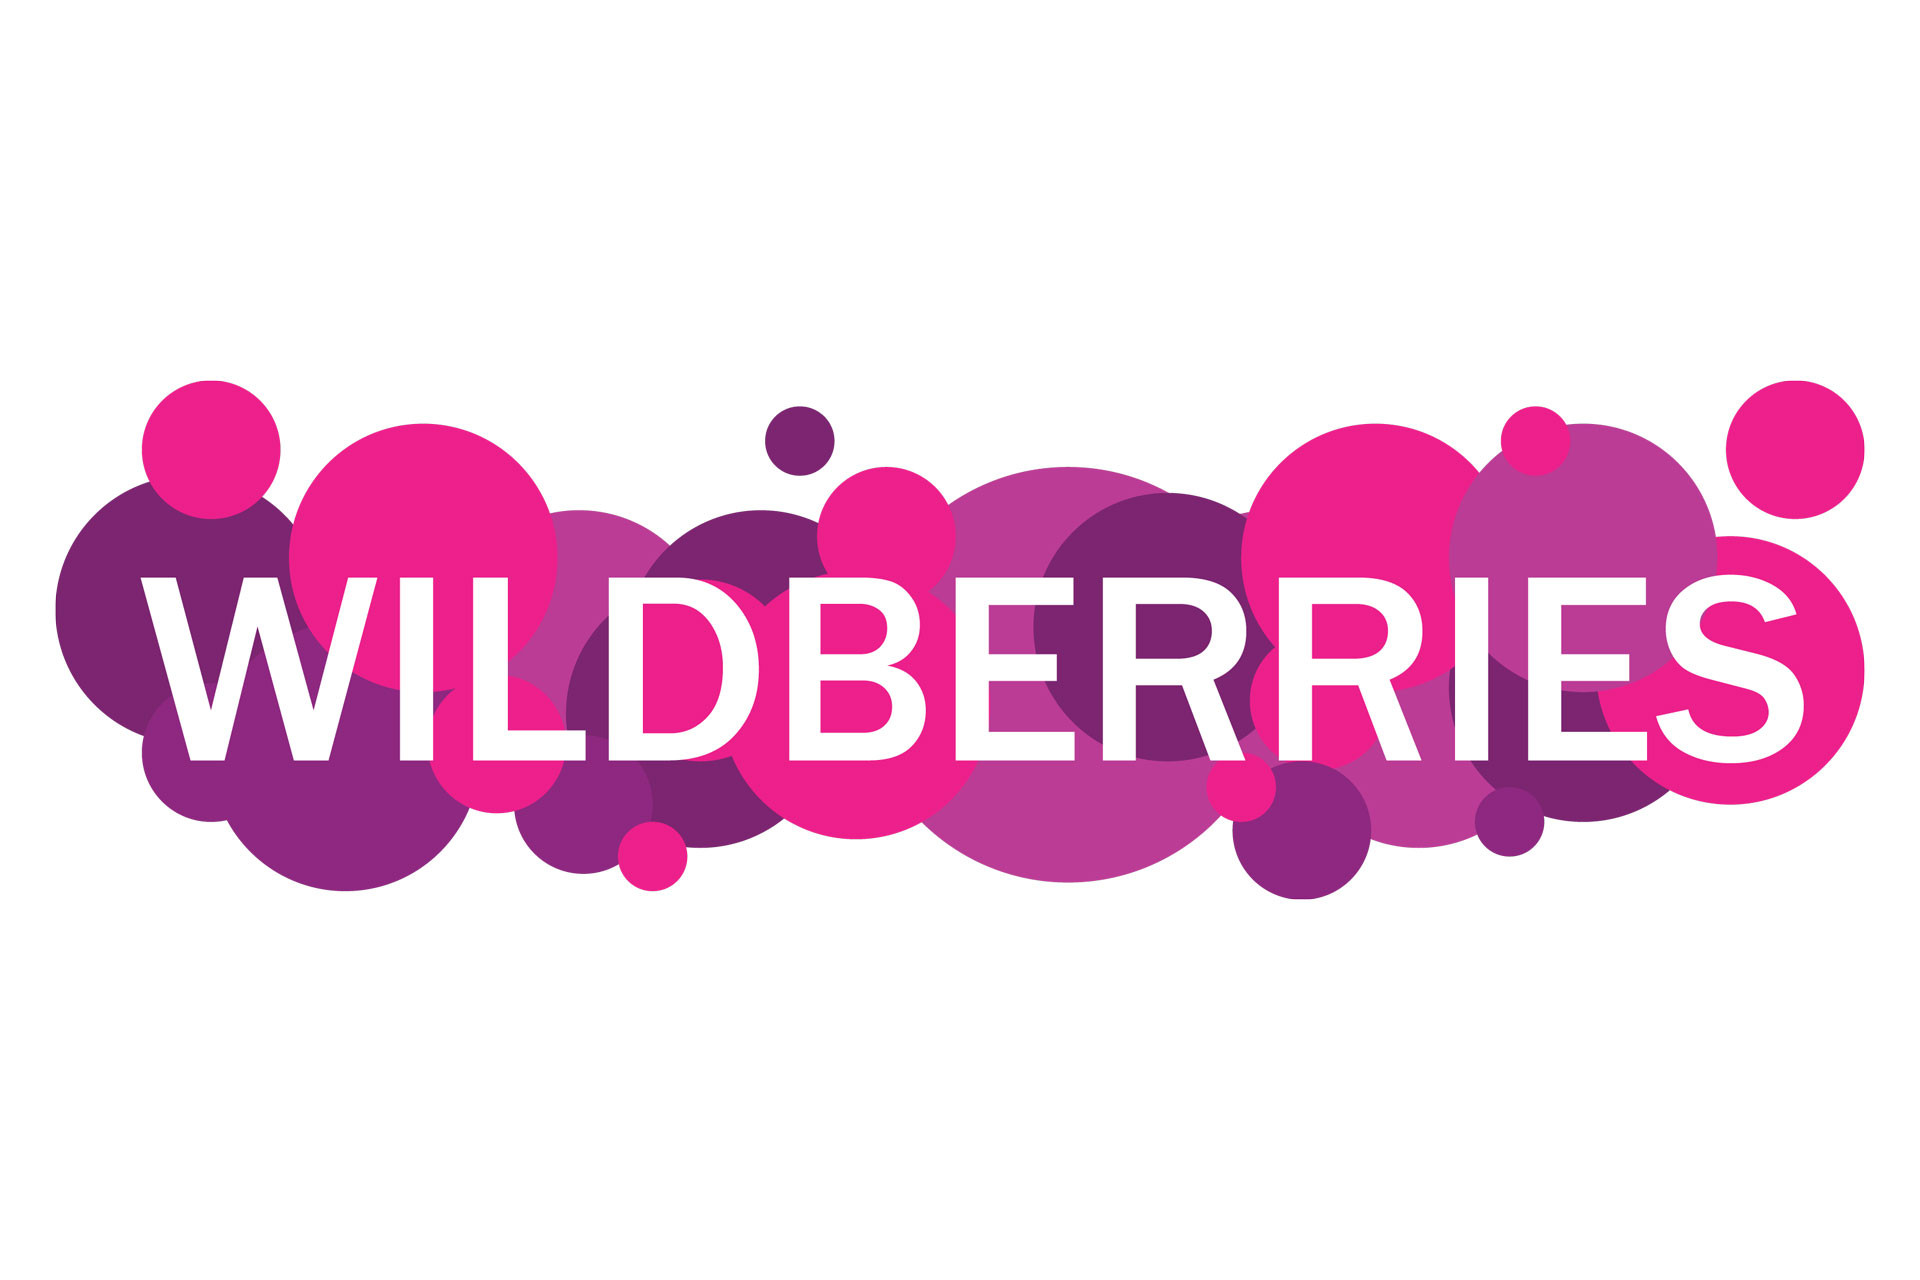 Роспотребнадзор сообщил, что возврат некачественных товаров на Wildberries бесплатный